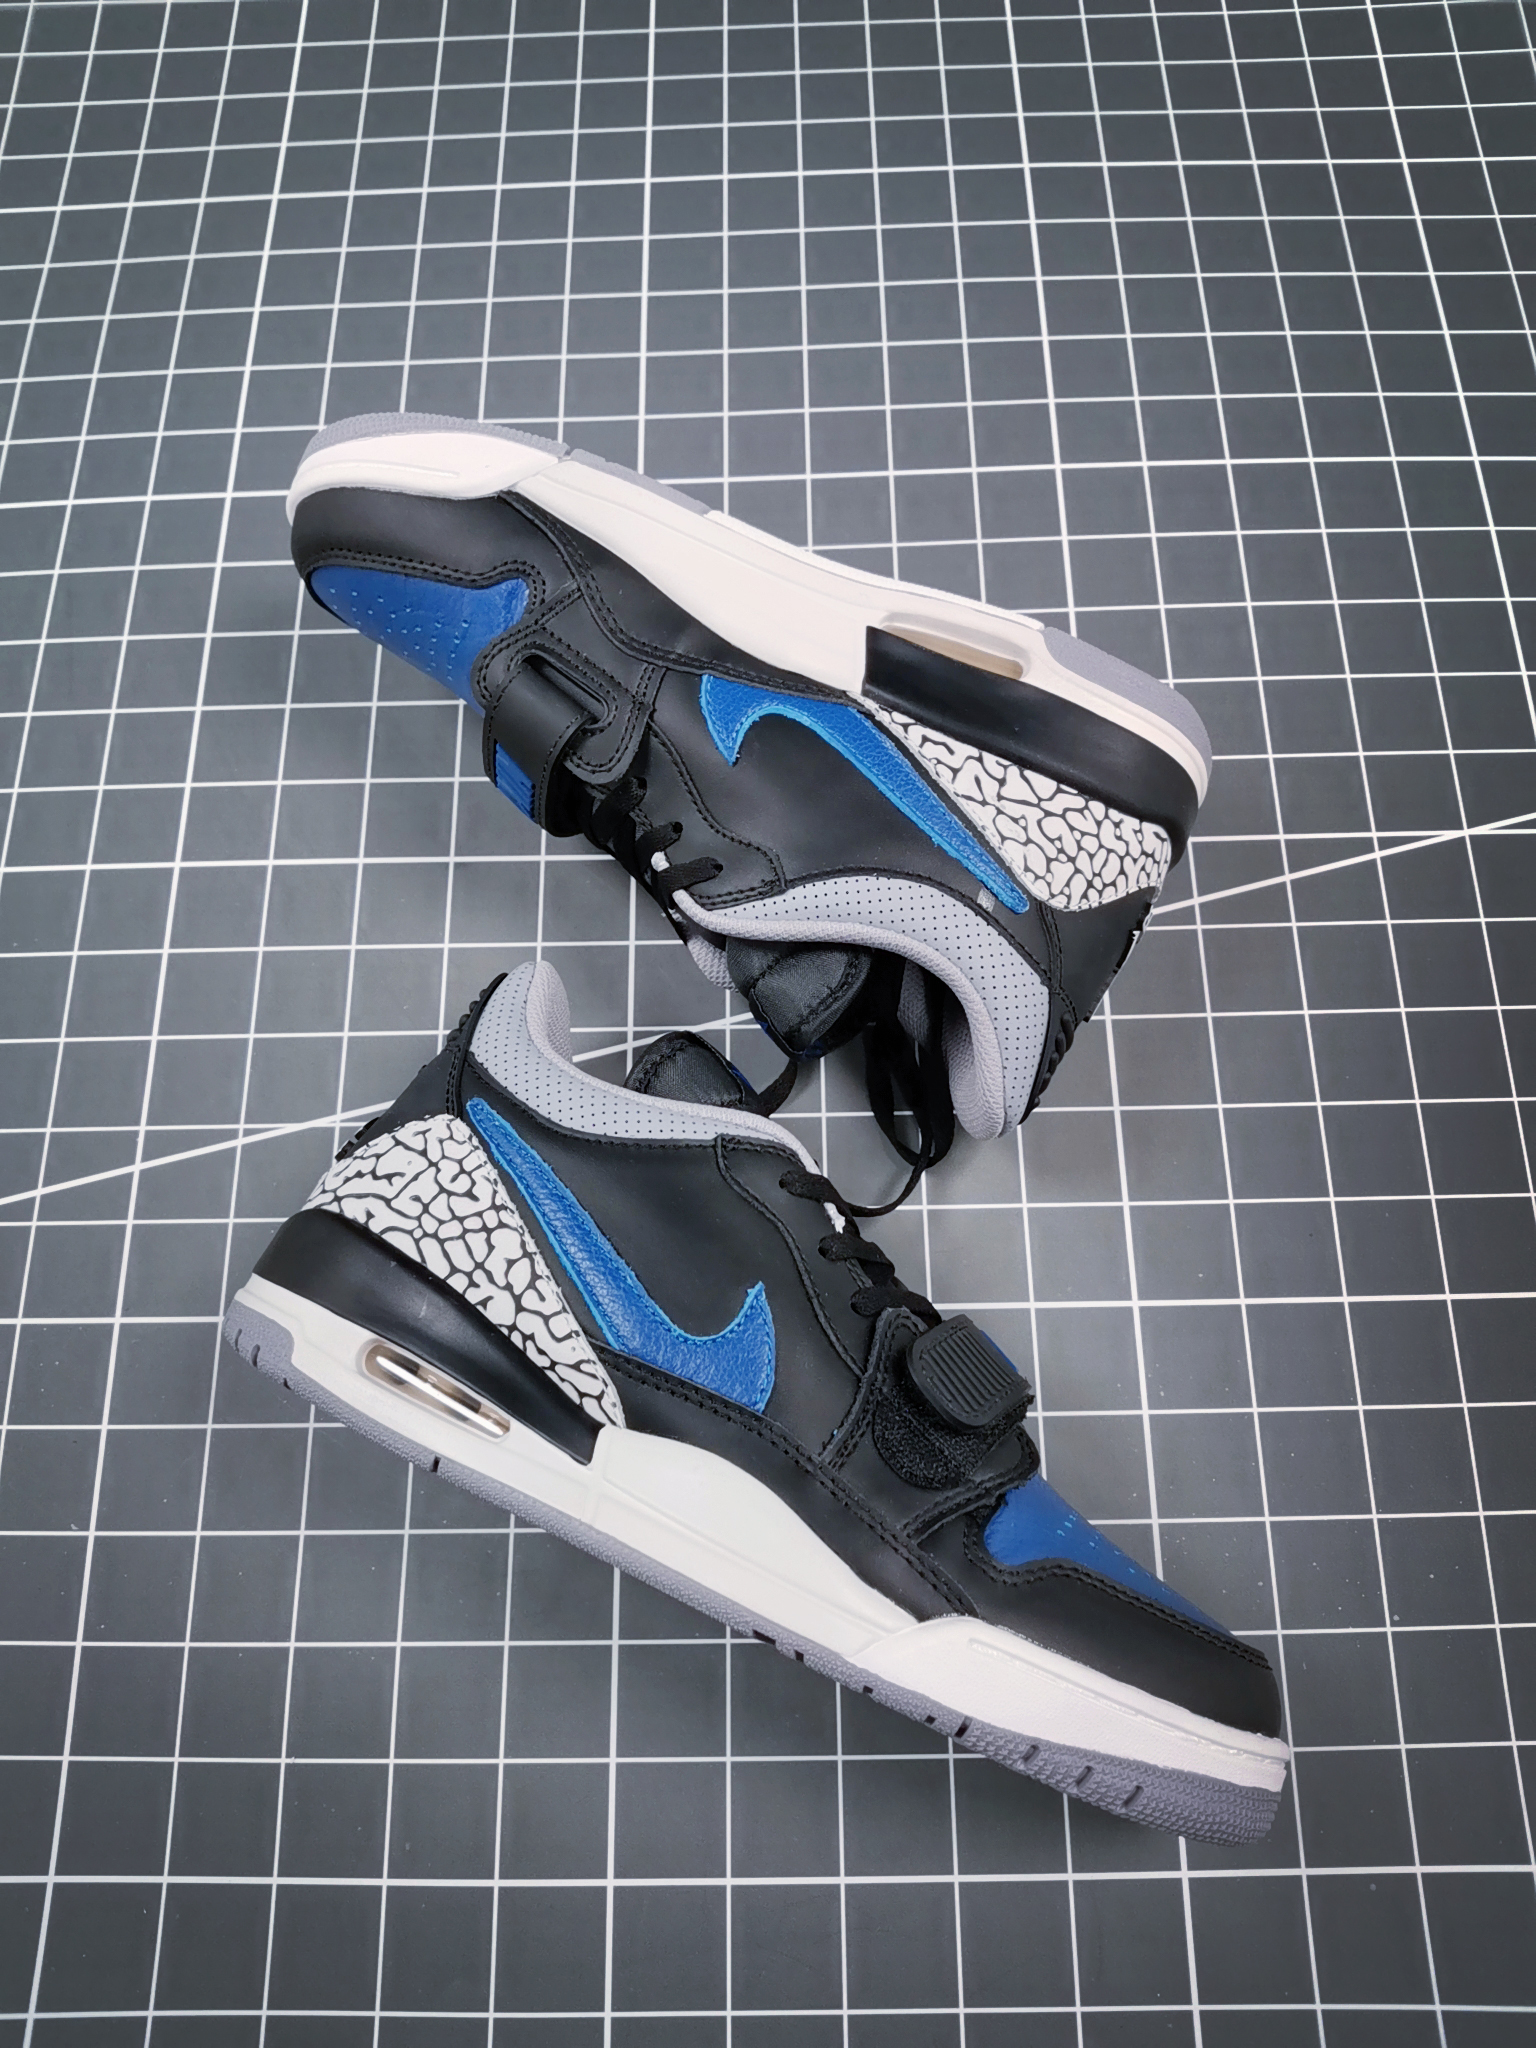 Air Jordan Legacy 312 Low Black Cement Blue Shoes